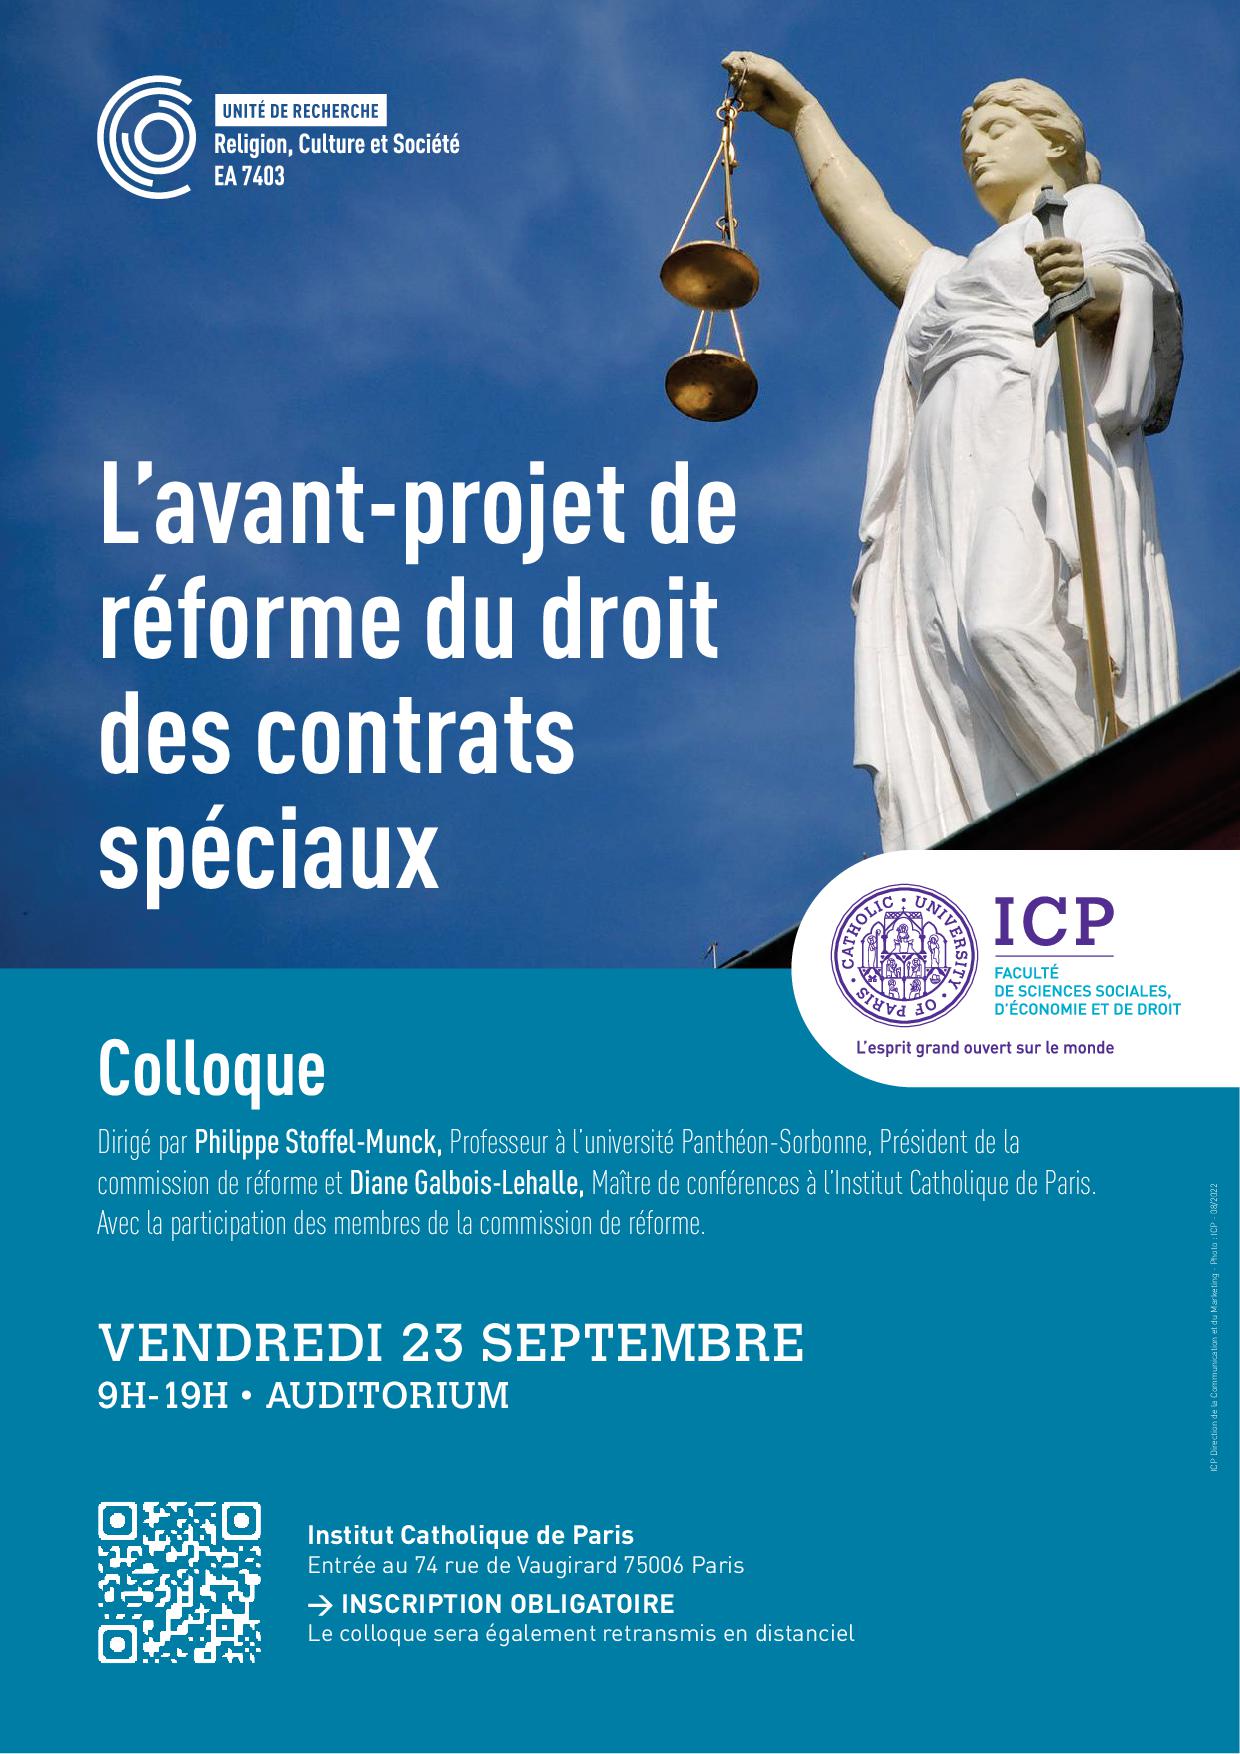 Colloque ICP 23 sept 2022